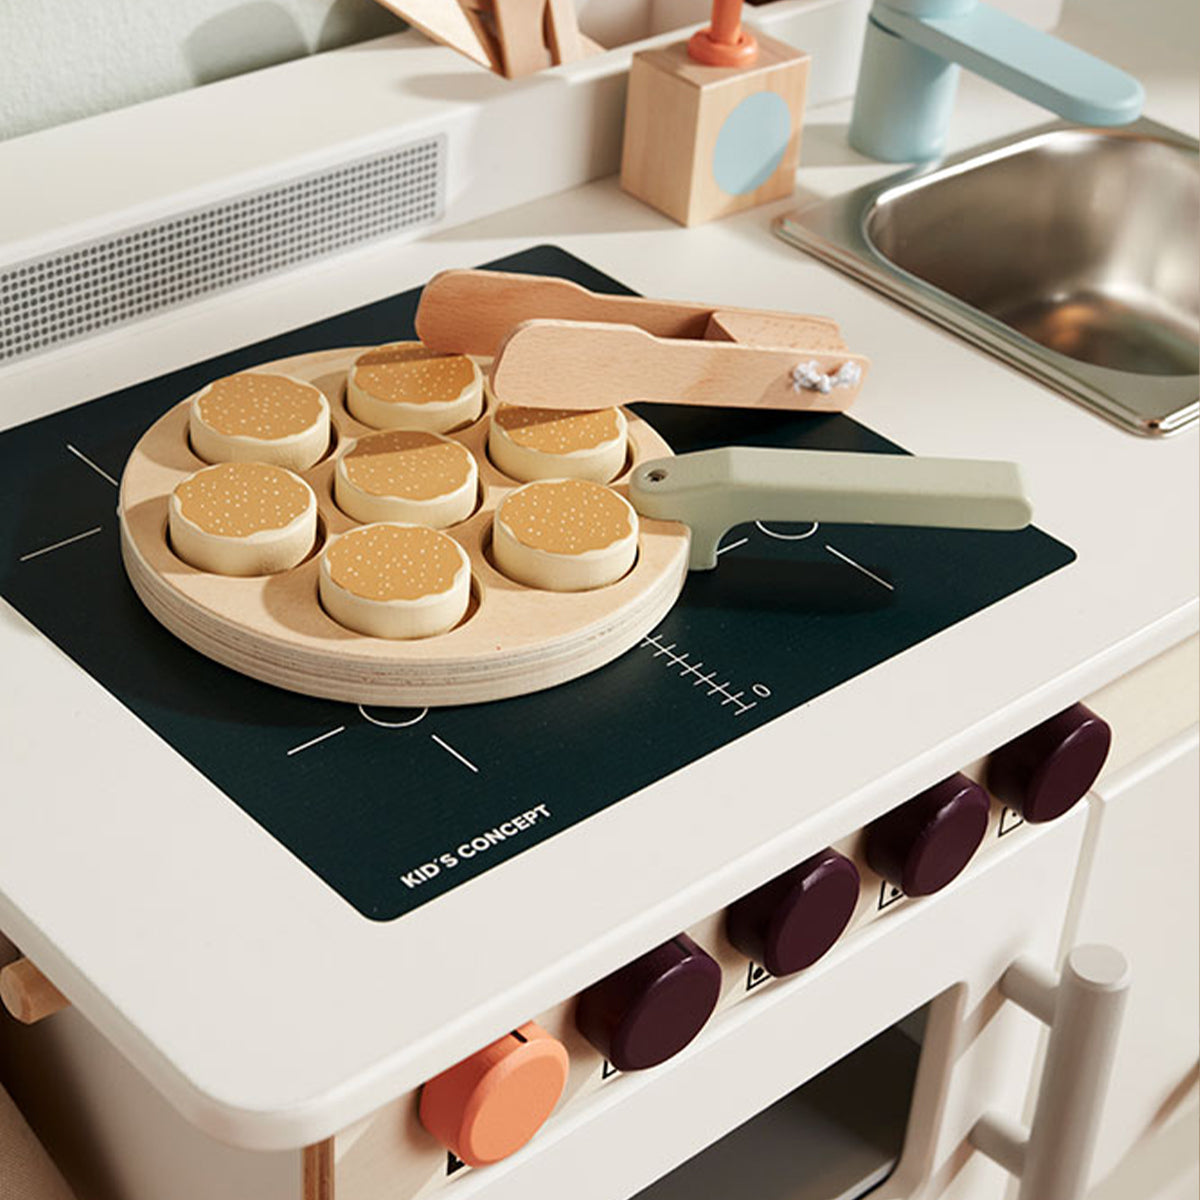 Met de Kid’s Concept Zweedse pannenkoekenset zet jouw kindje een heerlijke maaltijd op tafel. In Zweden heten deze lekkere pannenkoekjes ‘Plättar’ en bij deze speelset zit alles wat je nodig hebt om dit te maken. Leuk als extra uitbreiding voor de speelkeuken! VanZus.